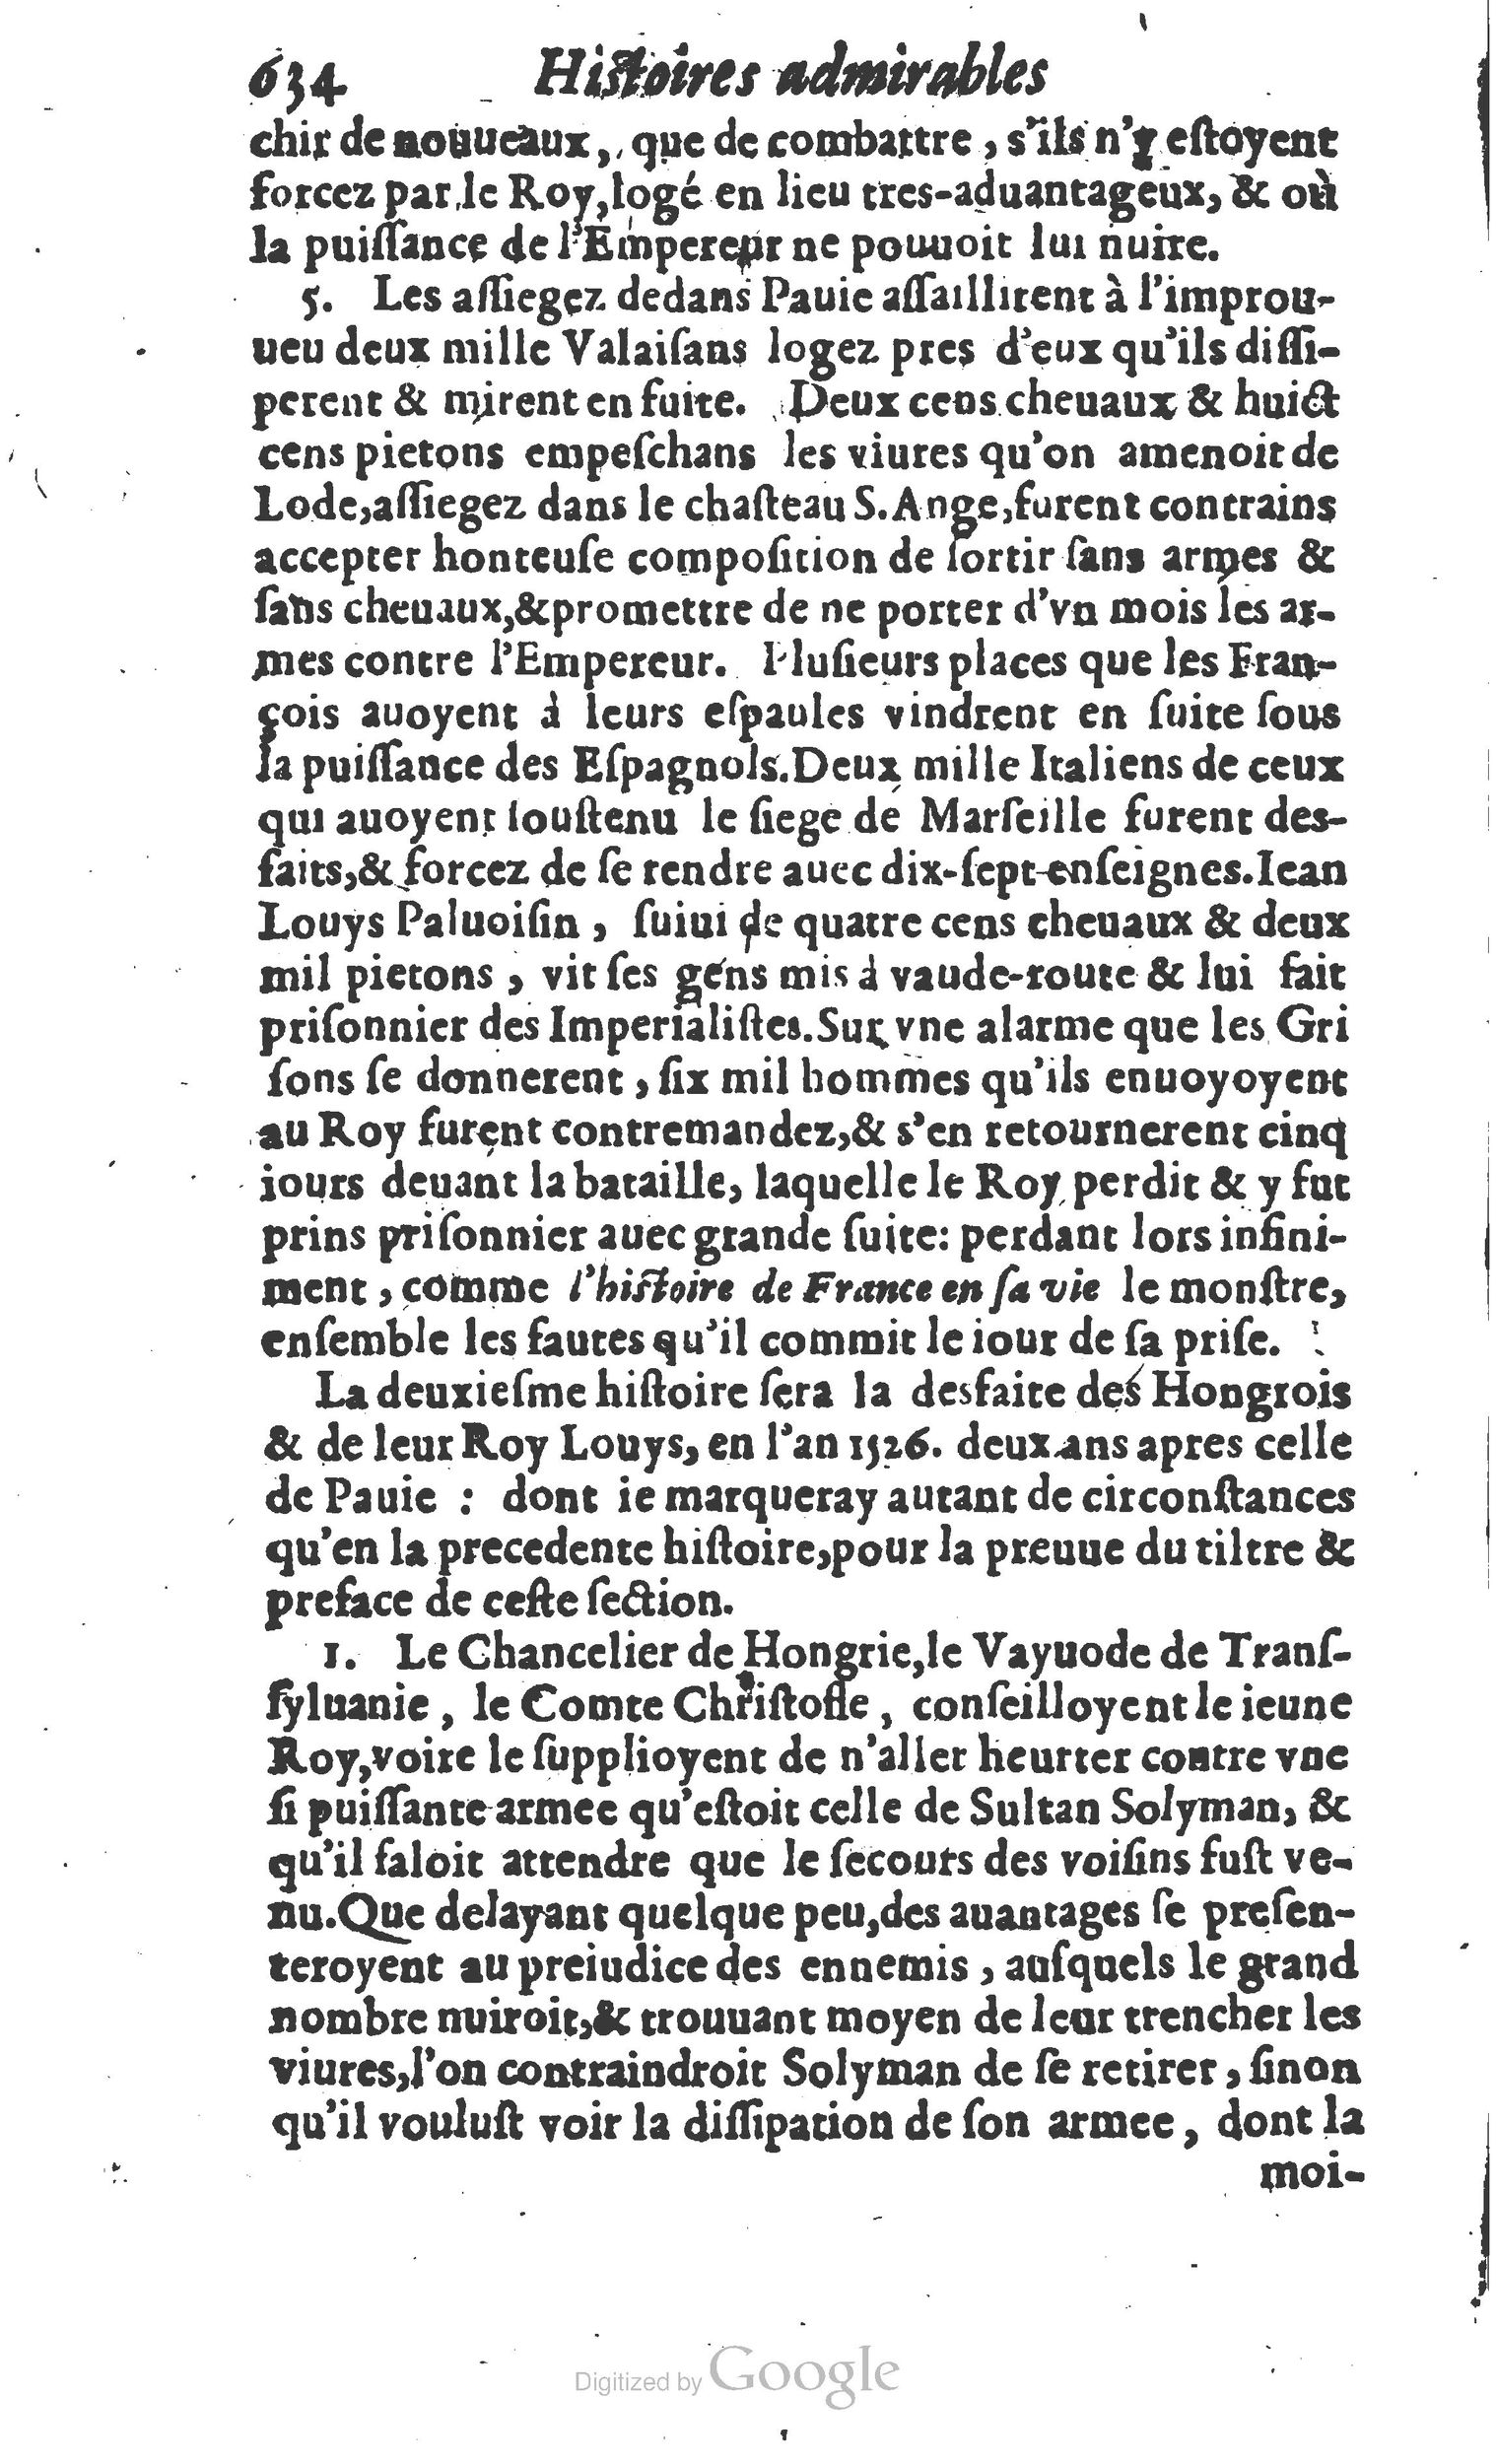 1610 Trésor d’histoires admirables et mémorables de nostre temps Marceau Princeton_Page_0655.jpg